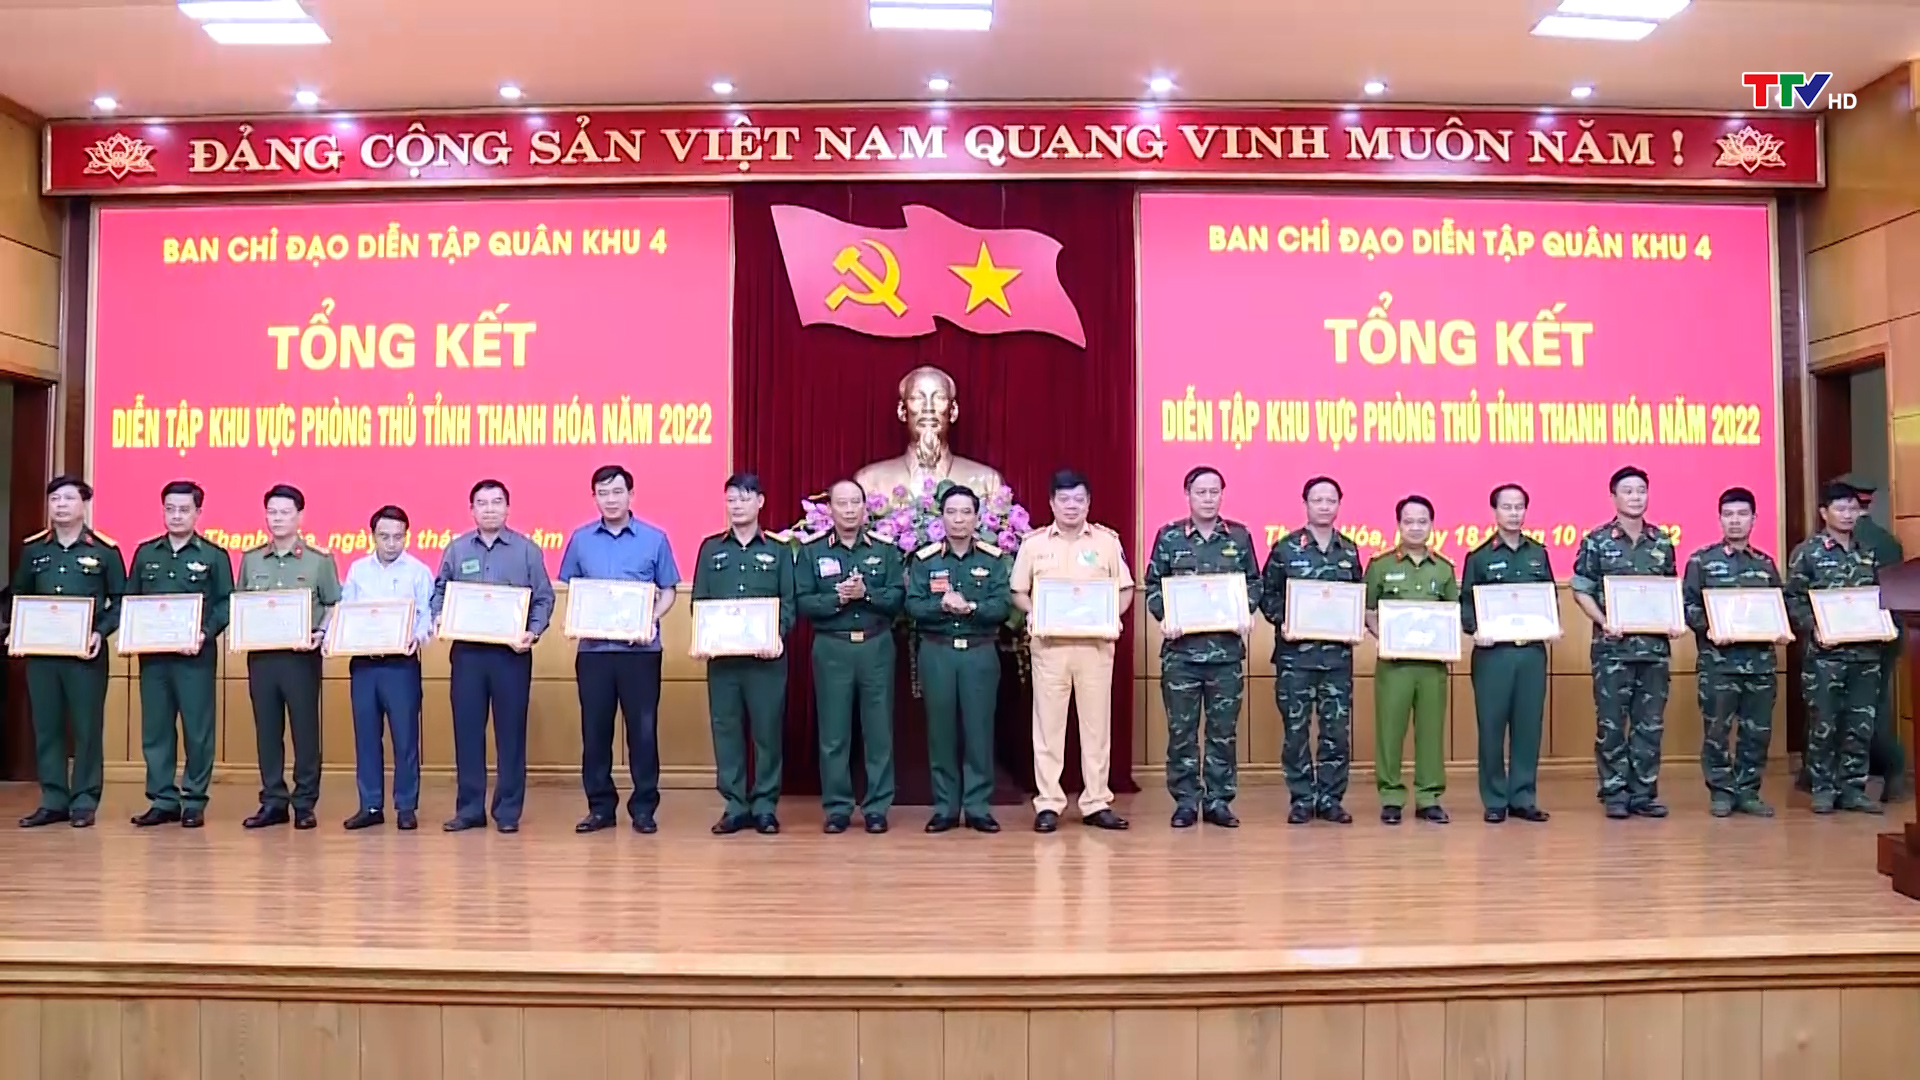 Diễn tập khu vực phòng thủ tỉnh Thanh Hoá năm 2022  thành công tốt đẹp, đảm bảo an toàn tuyệt đối - Ảnh 6.